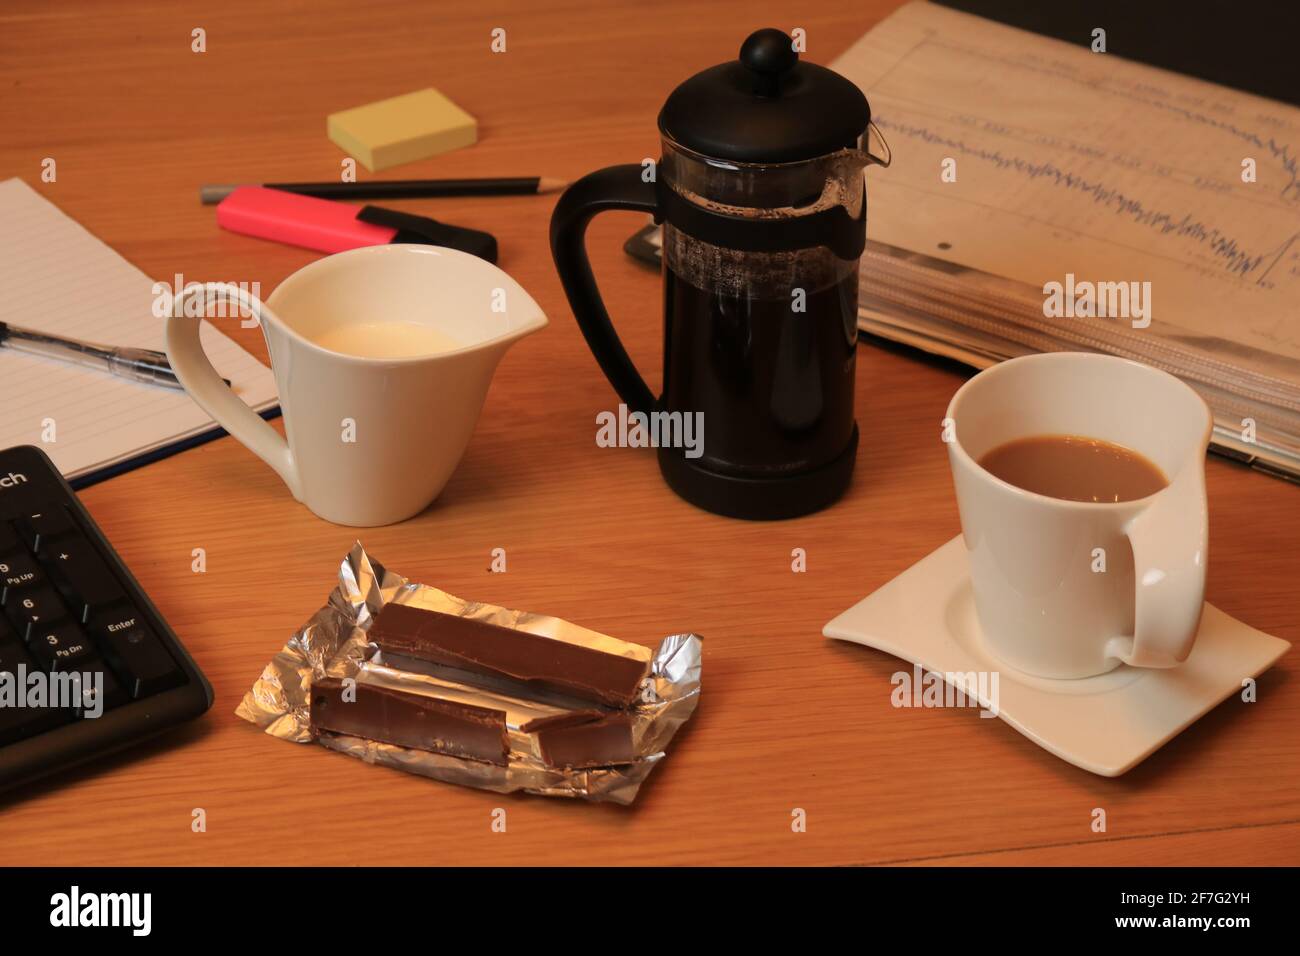 Kaffeetasse und Kanne mit Milch, machen Sie eine Pause, trinken und mit Wafer-Schokolade überzogene Snacks in Zinnfolie, Dokumenten, Tastatur, Stift, Bleistift und Pad Stockfoto